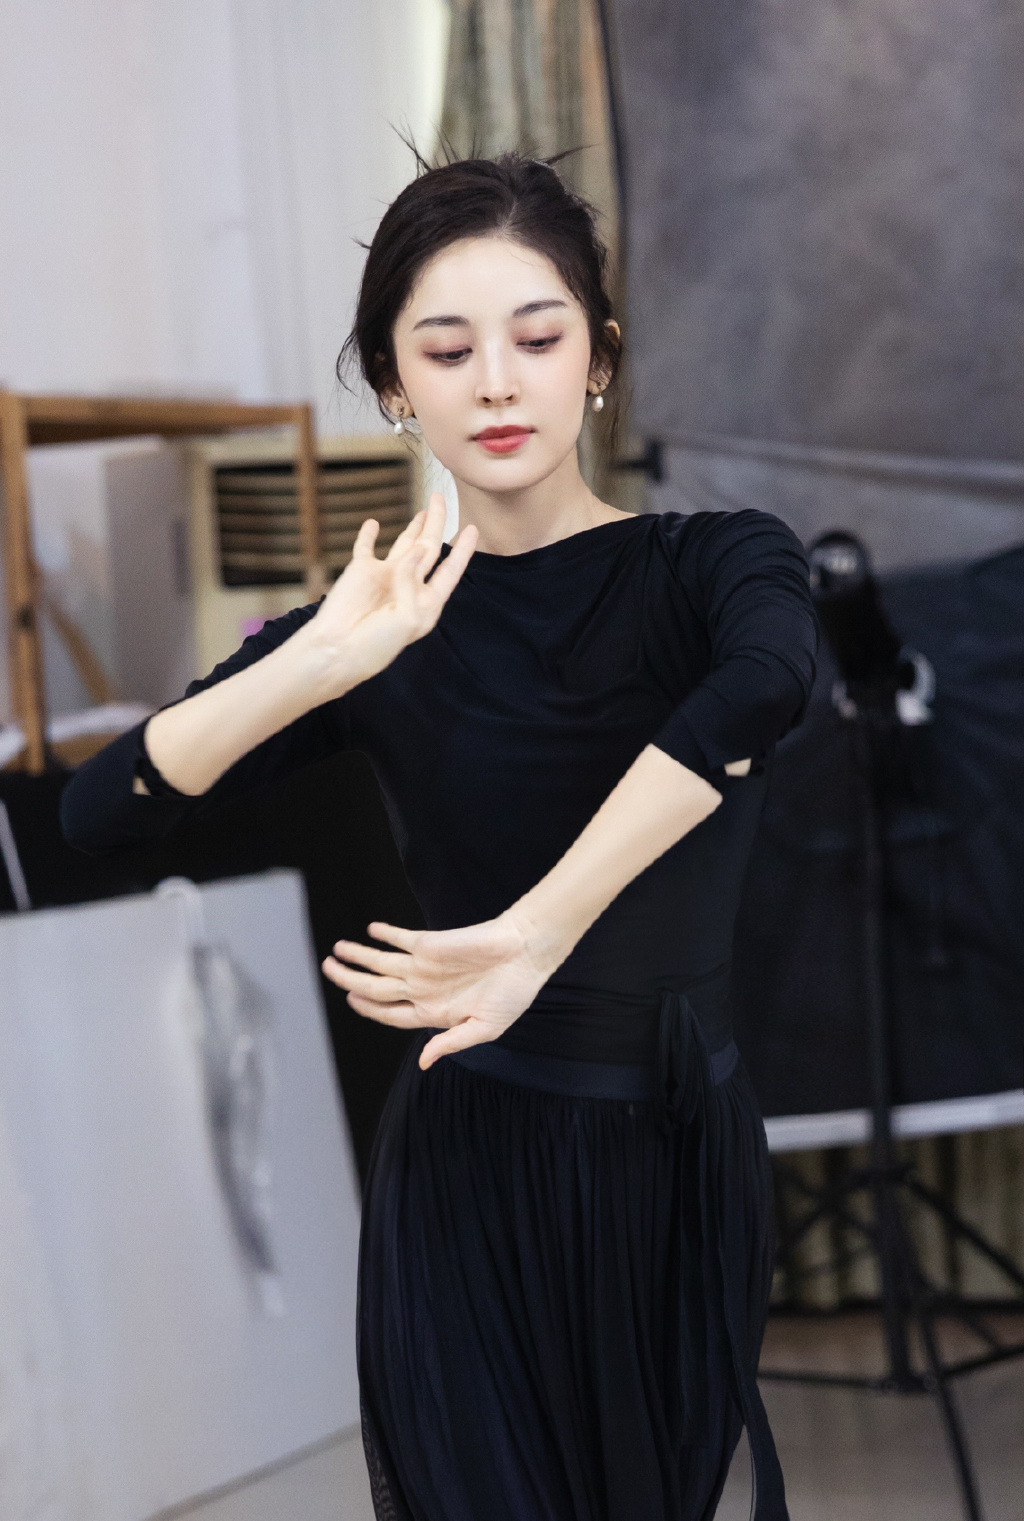 古力娜扎晒练习舞蹈时黑衣黑裙灵动优雅美美照片图片